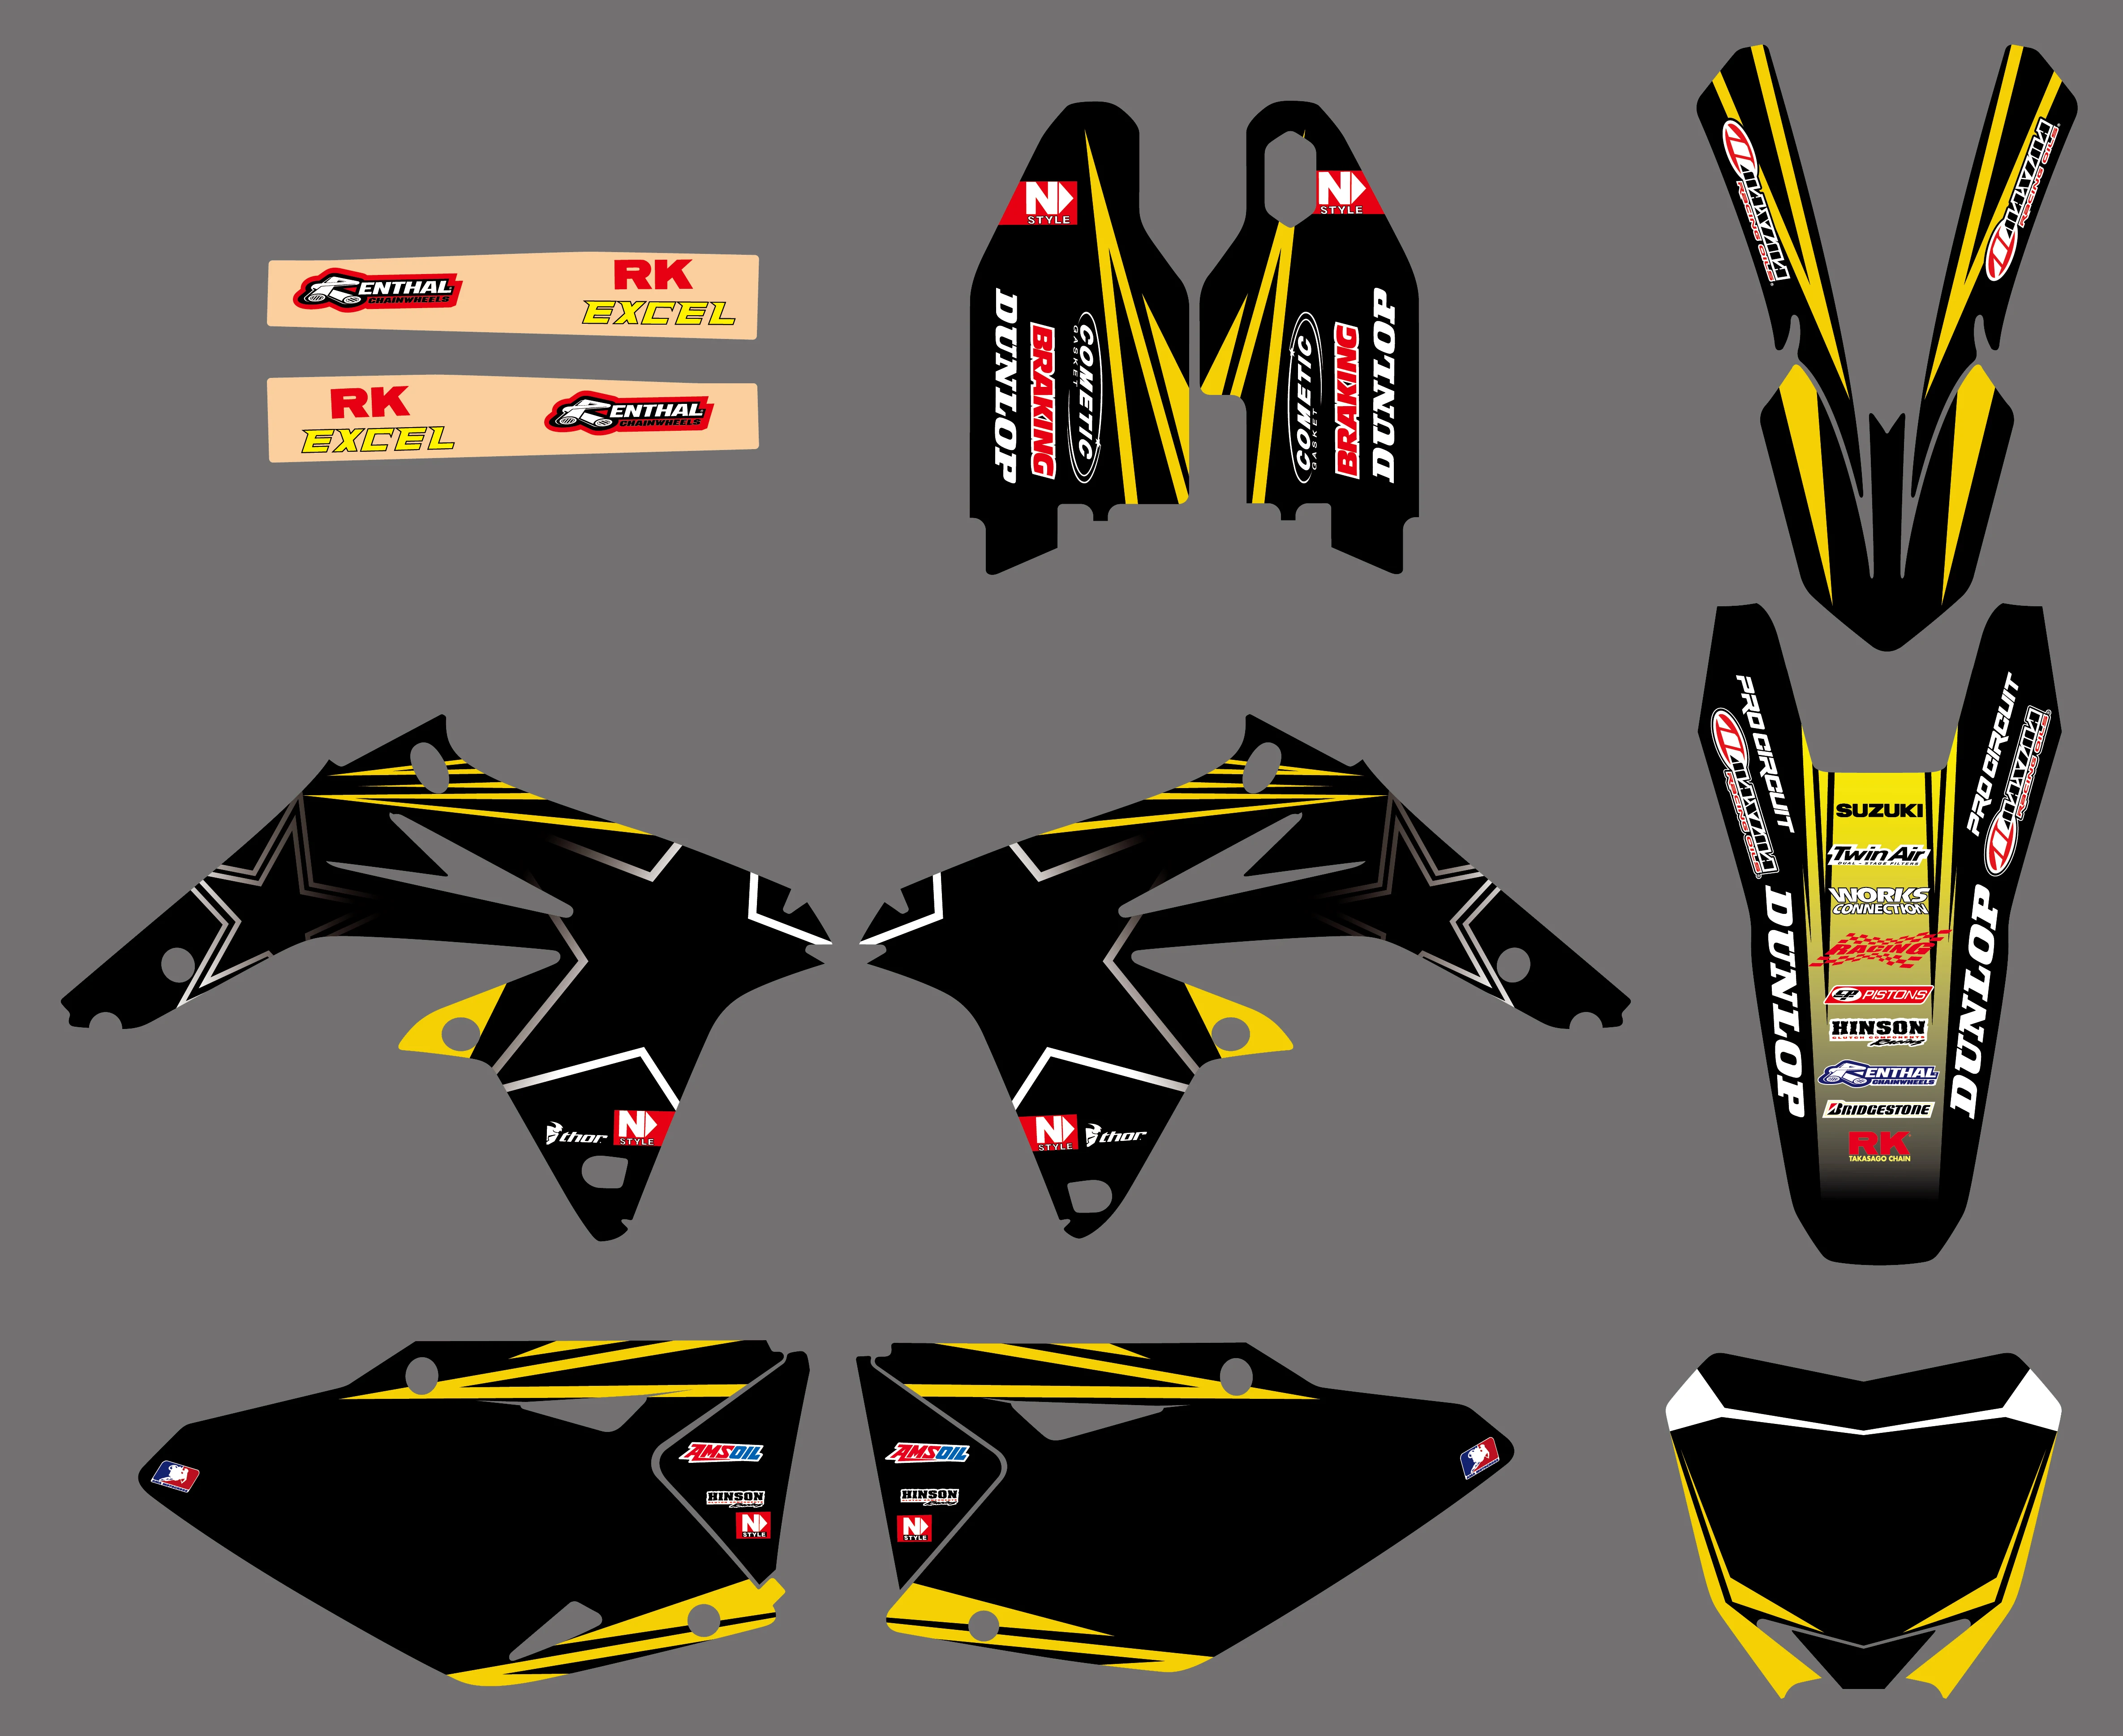 

Motorcycle New Style Team Graphics Background Decal Sticker Kit For Suzuki RMZ450 RM-Z450 RM-Z RMZ 450 2008-2014 2010 2011 2012